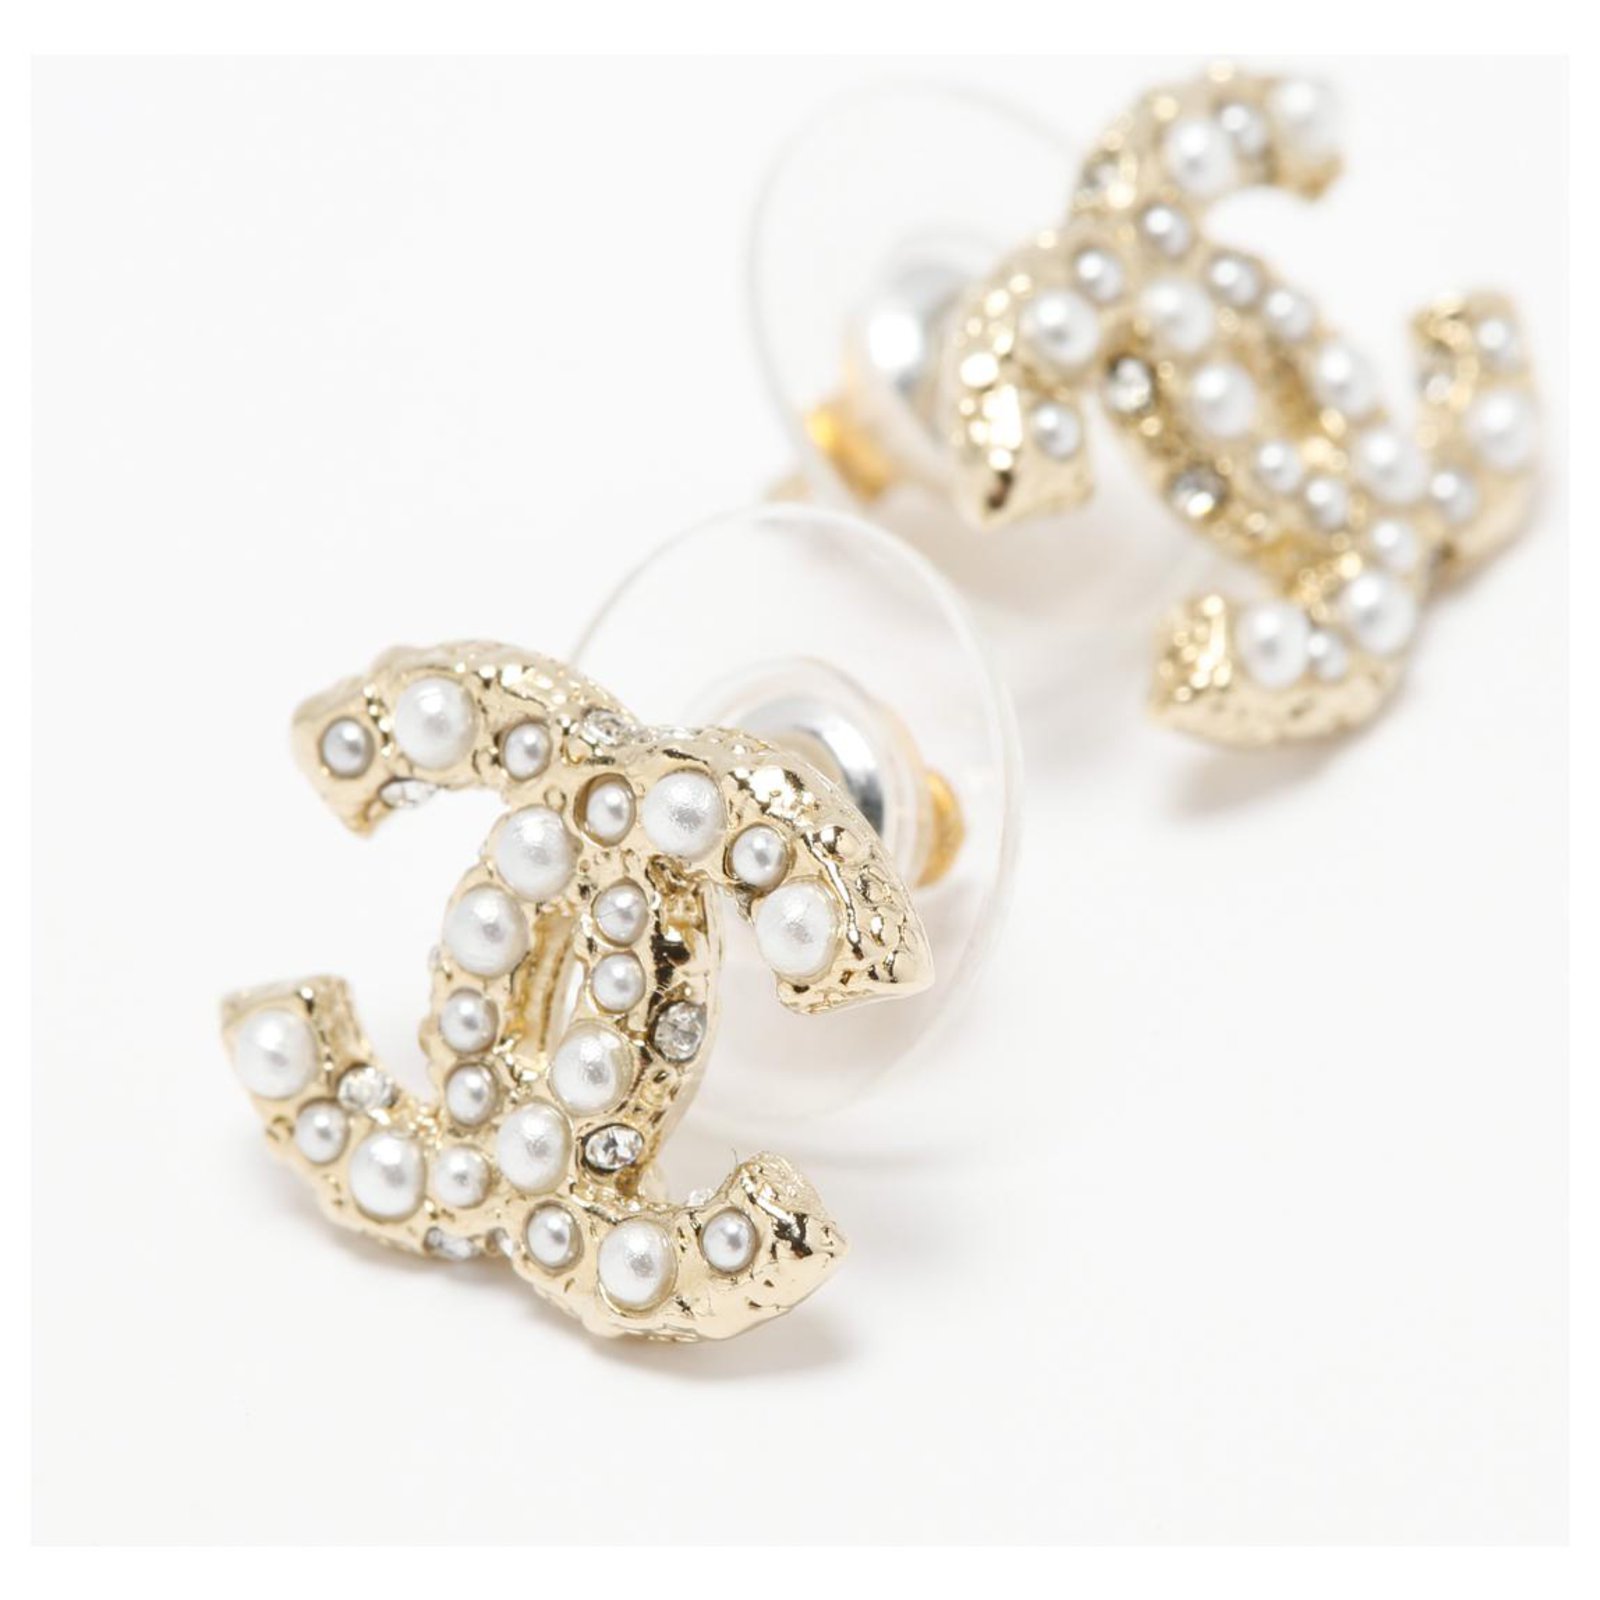 Chanel earrings champagne - Gem